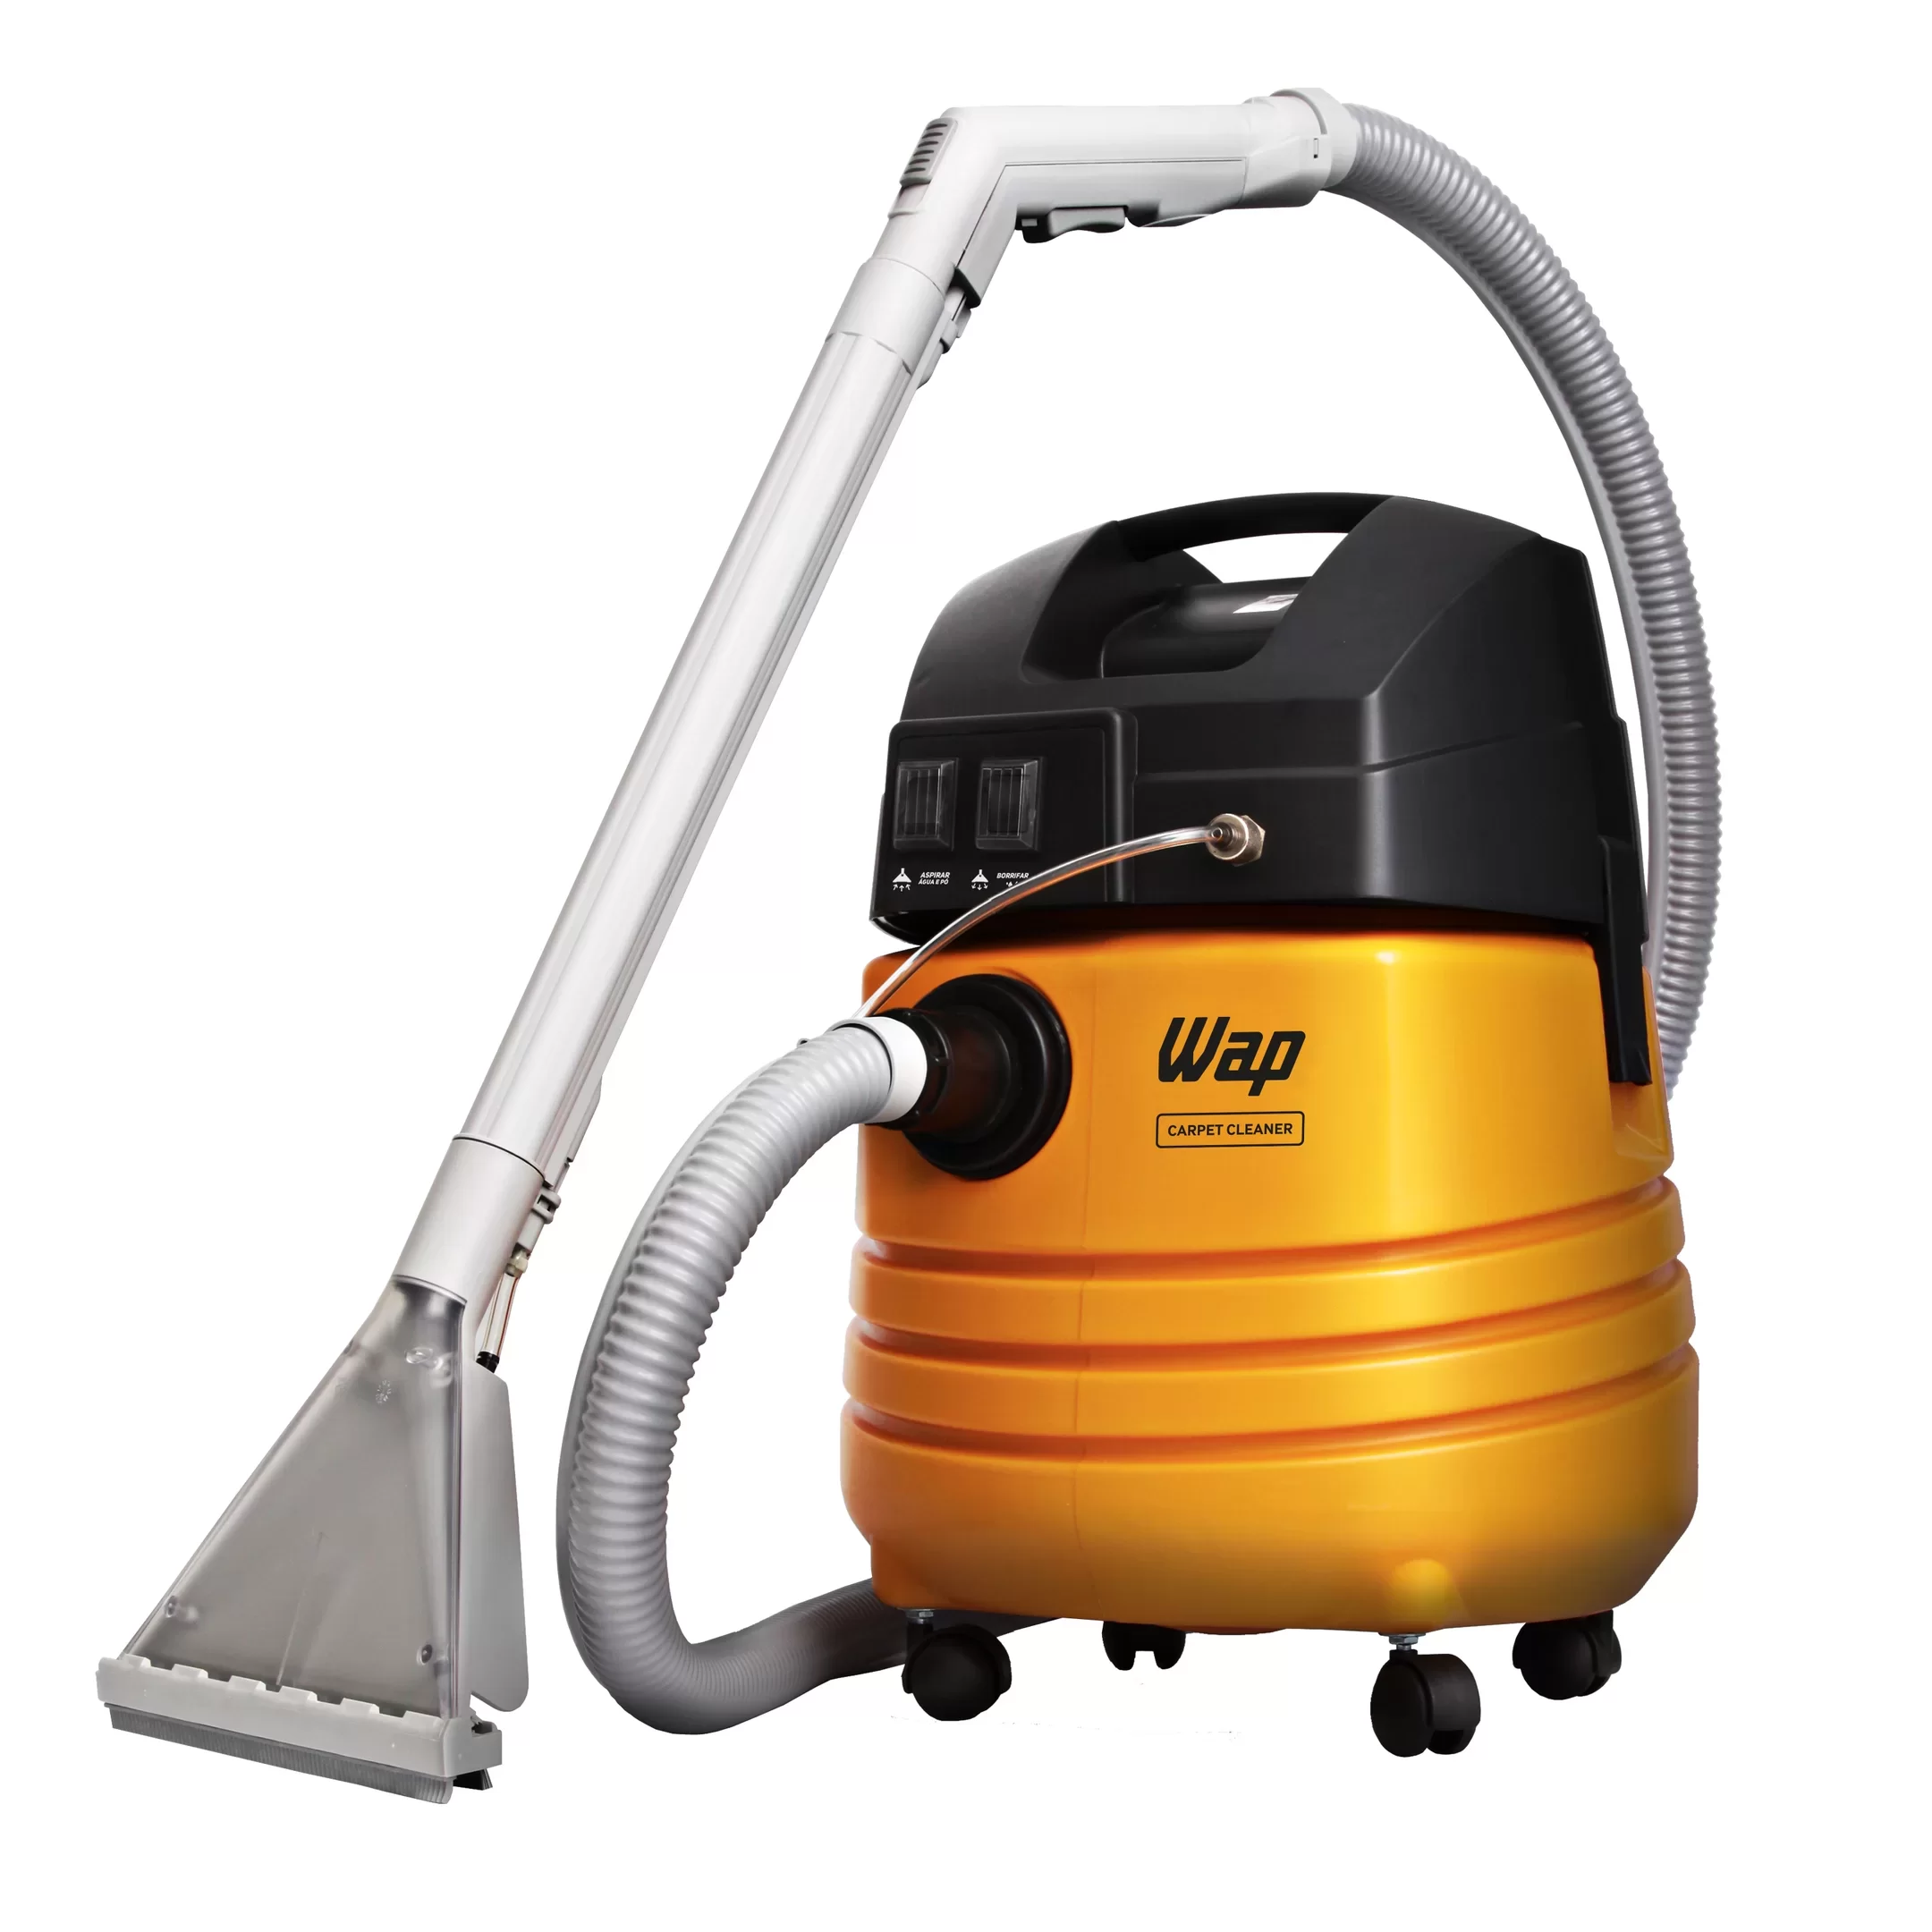 Extratora de Limpeza WAP Carpet Cleaner 1600W Uso Profissional Bocal de Sopro, Borrifa e Aspira 220V Amarelo/Preto